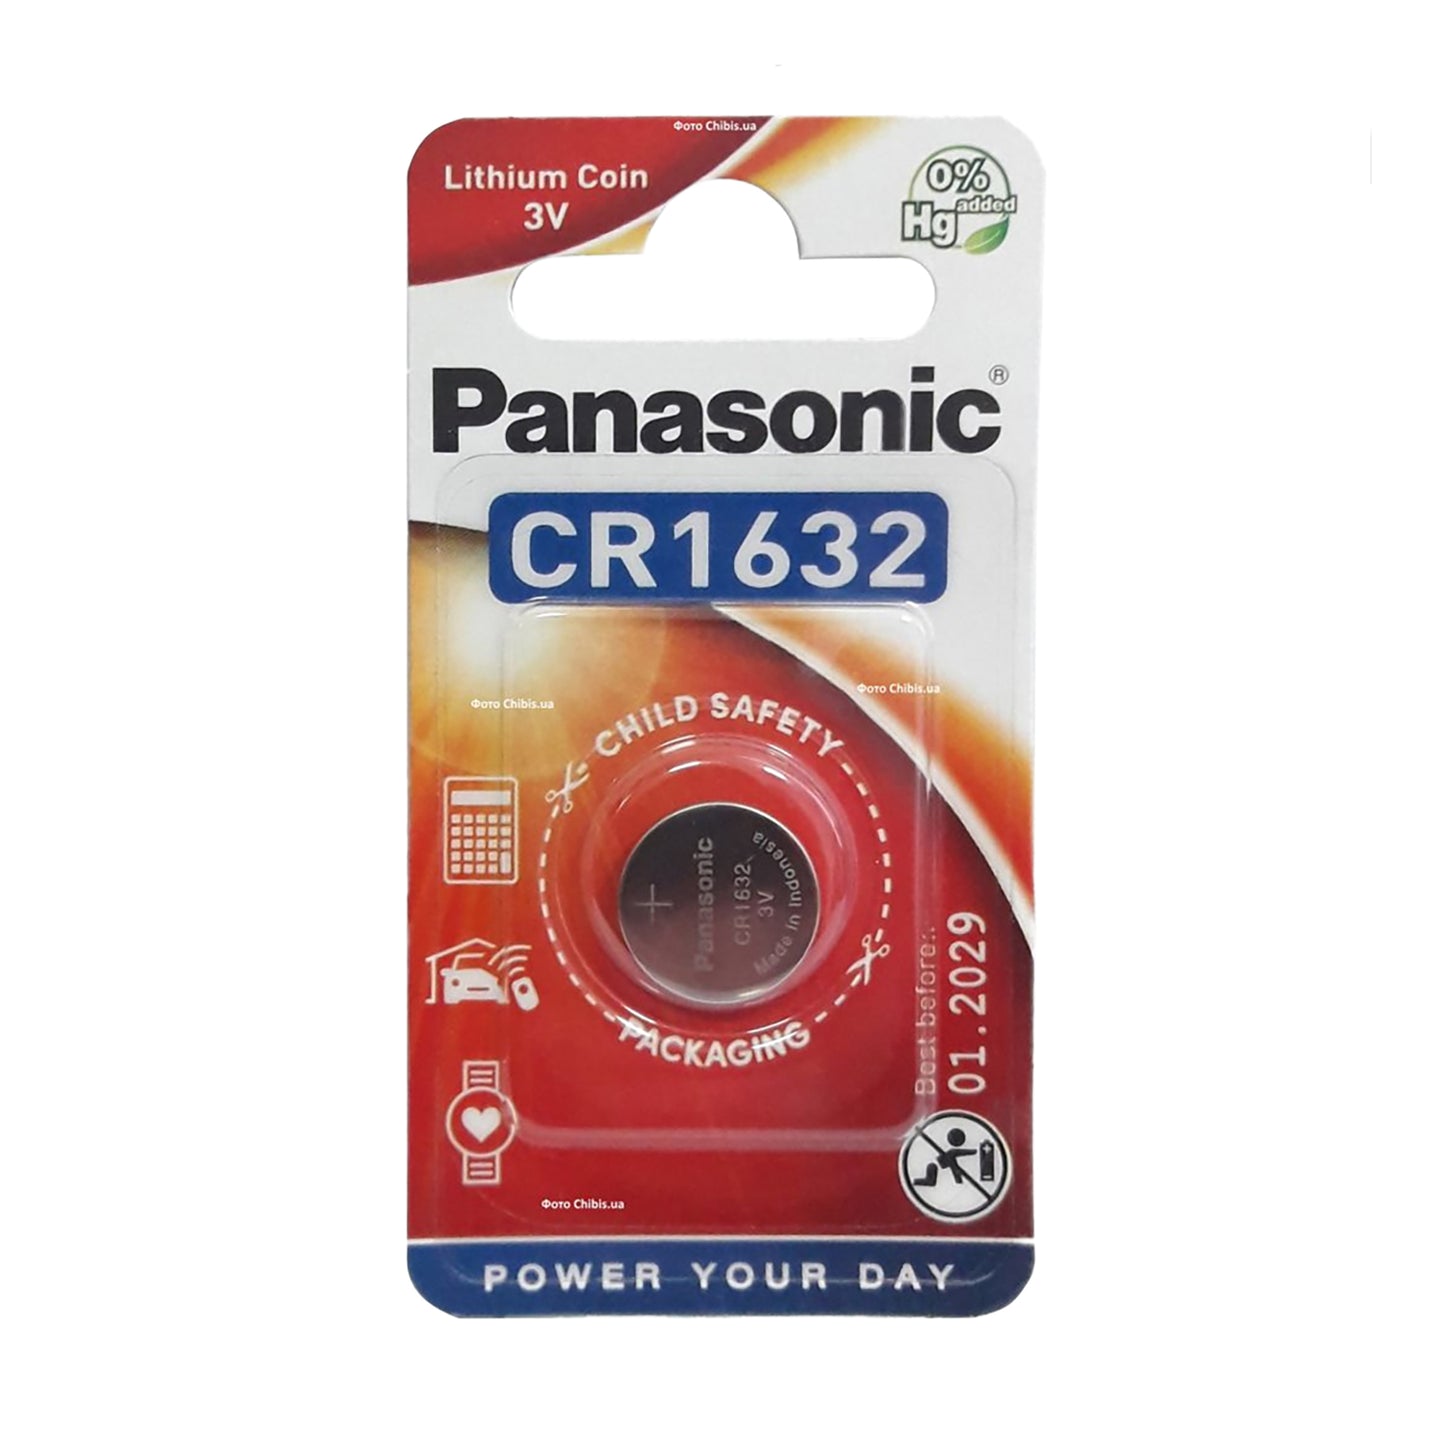 PAN-CR1632-1 - литиевая батарейка Panasonic тип CR1632, напряжение: 3 В (1 шт. в блистере)